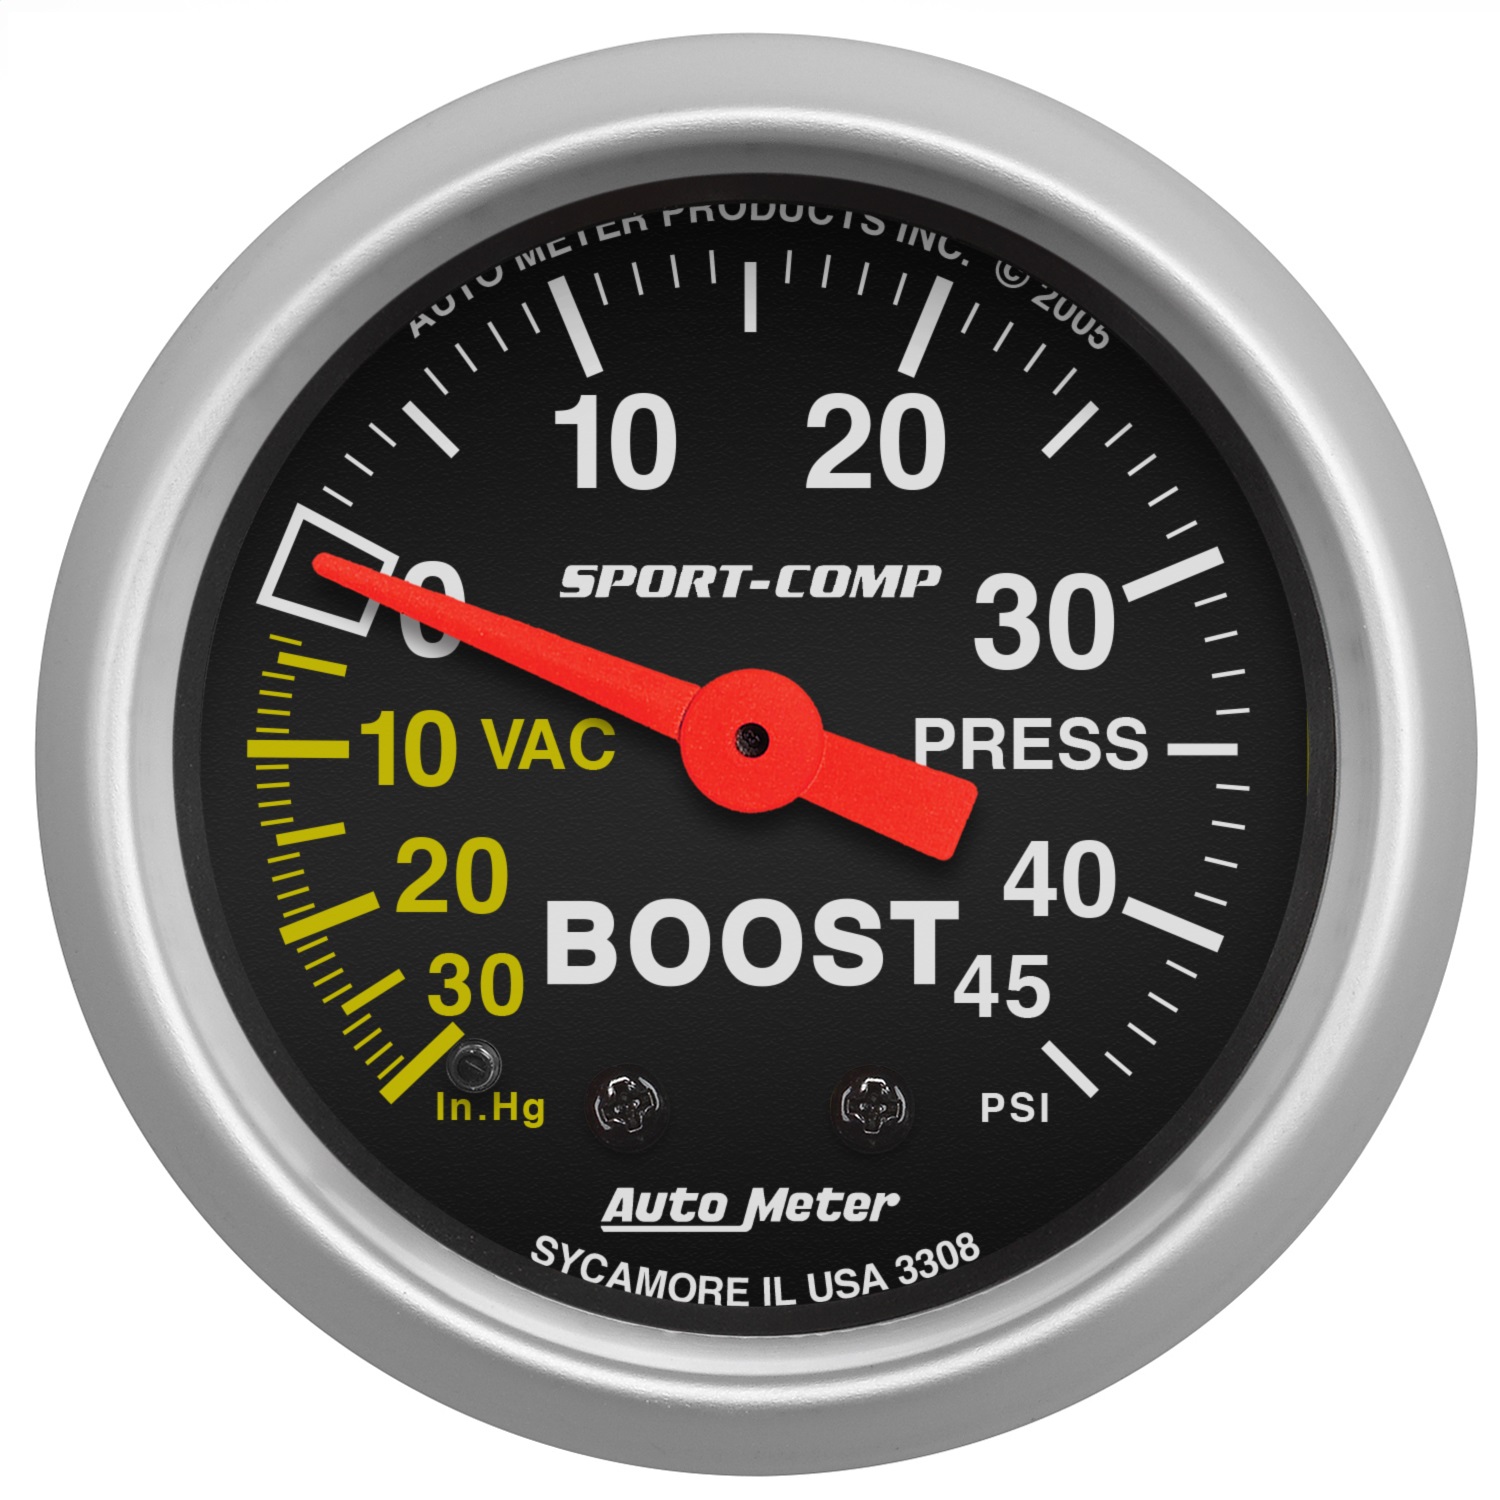 Auto Meter Auto Meter 3308 Sport-Comp; Mechanical Boost/Vacuum Gauge